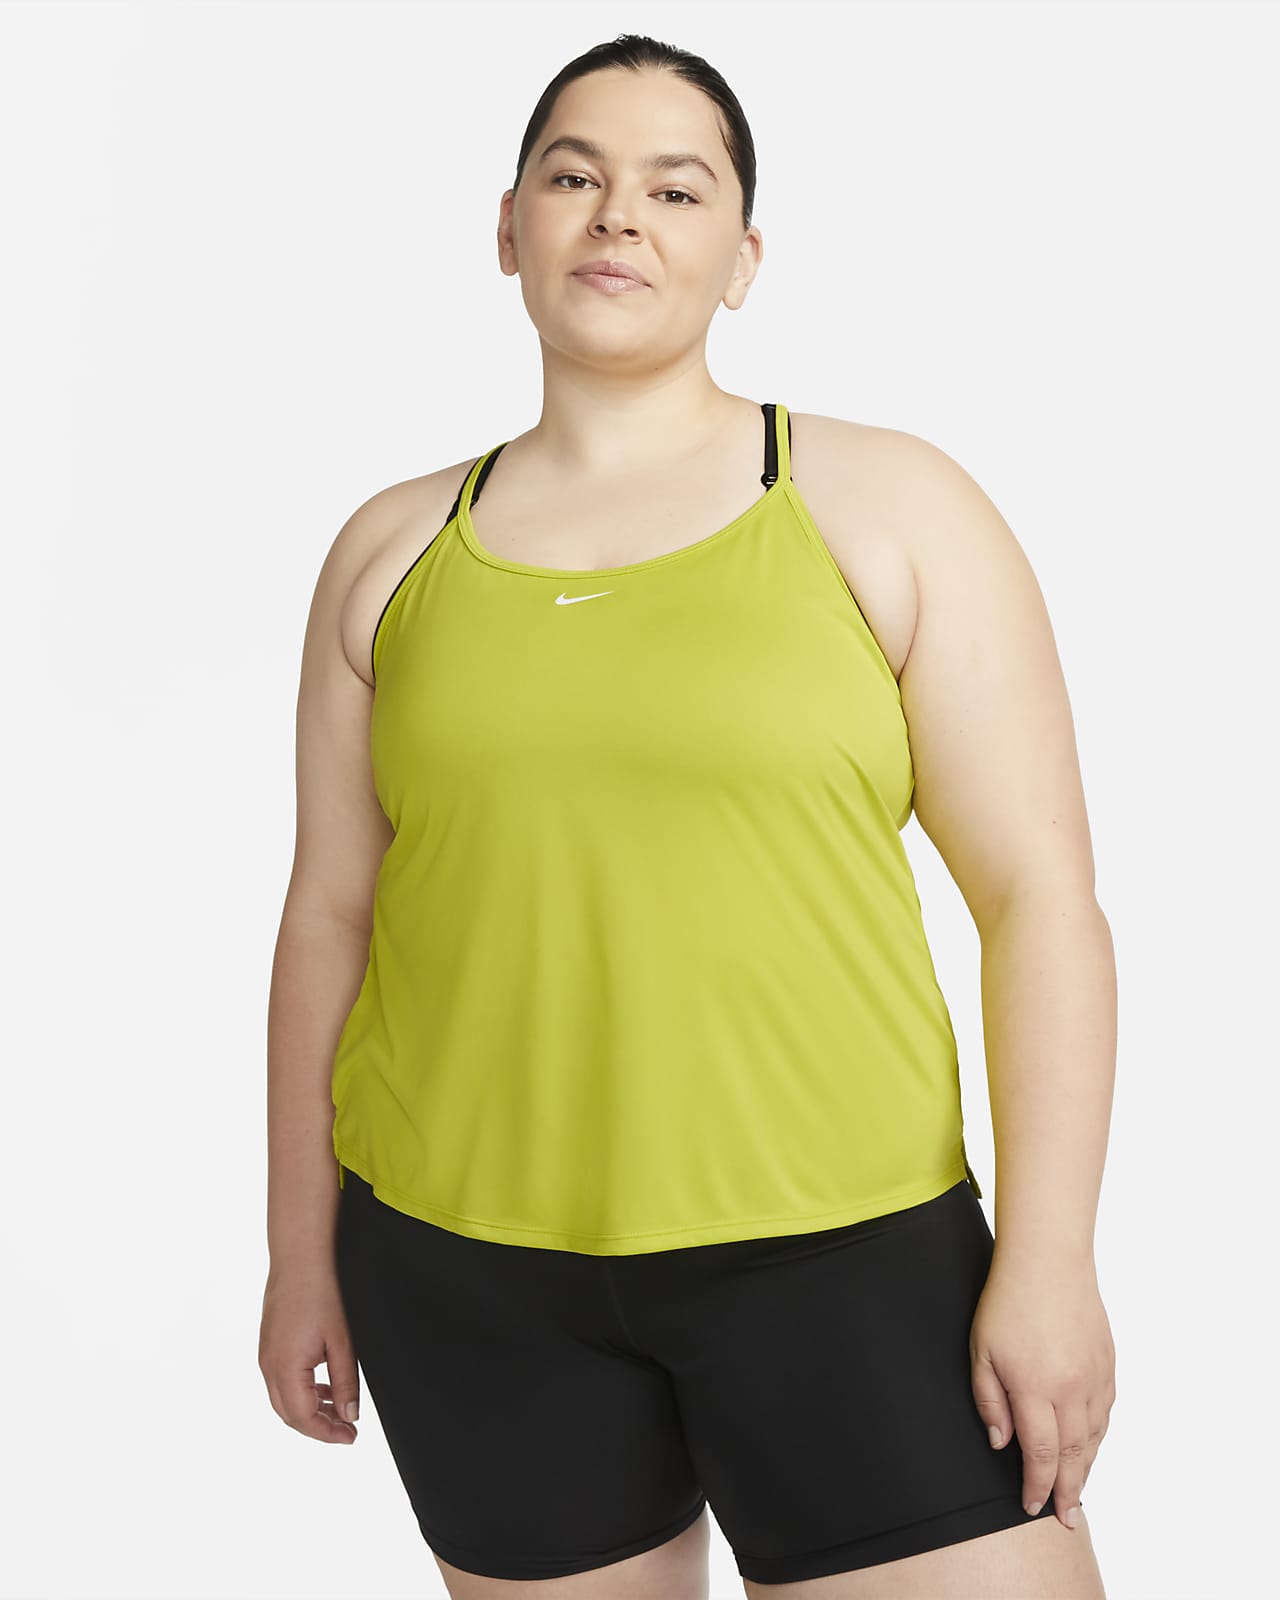 Camiseta de de ajuste estándar para mujer (talla grande) Nike Dri-FIT One Elastika. Nike.com